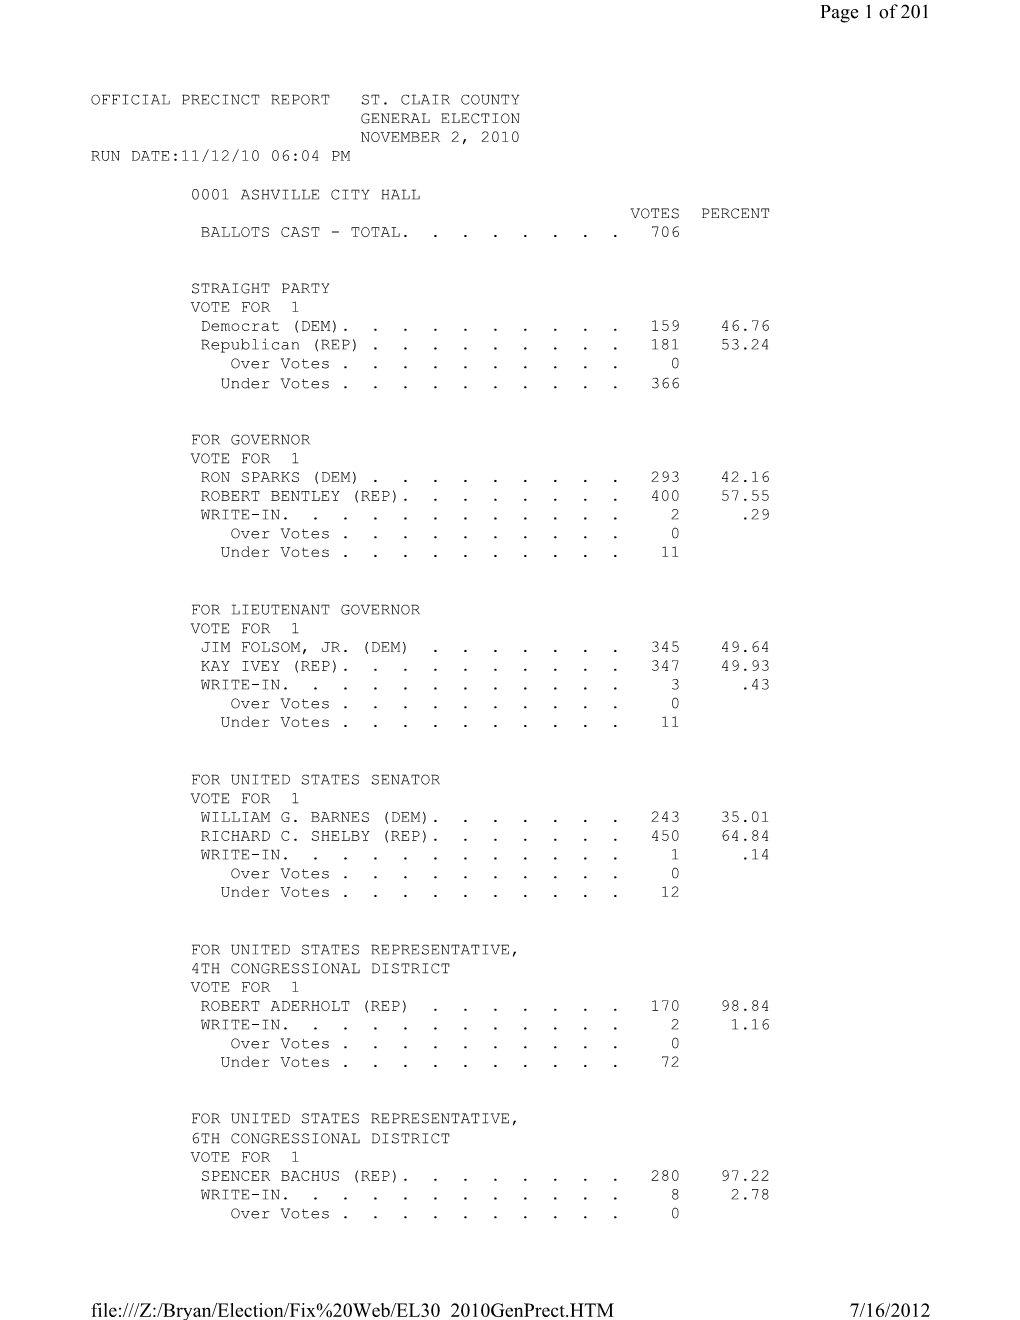 Page 1 of 201 7/16/2012 File:///Z:/Bryan/Election/Fix%20Web/EL30 2010Genprect.HTM